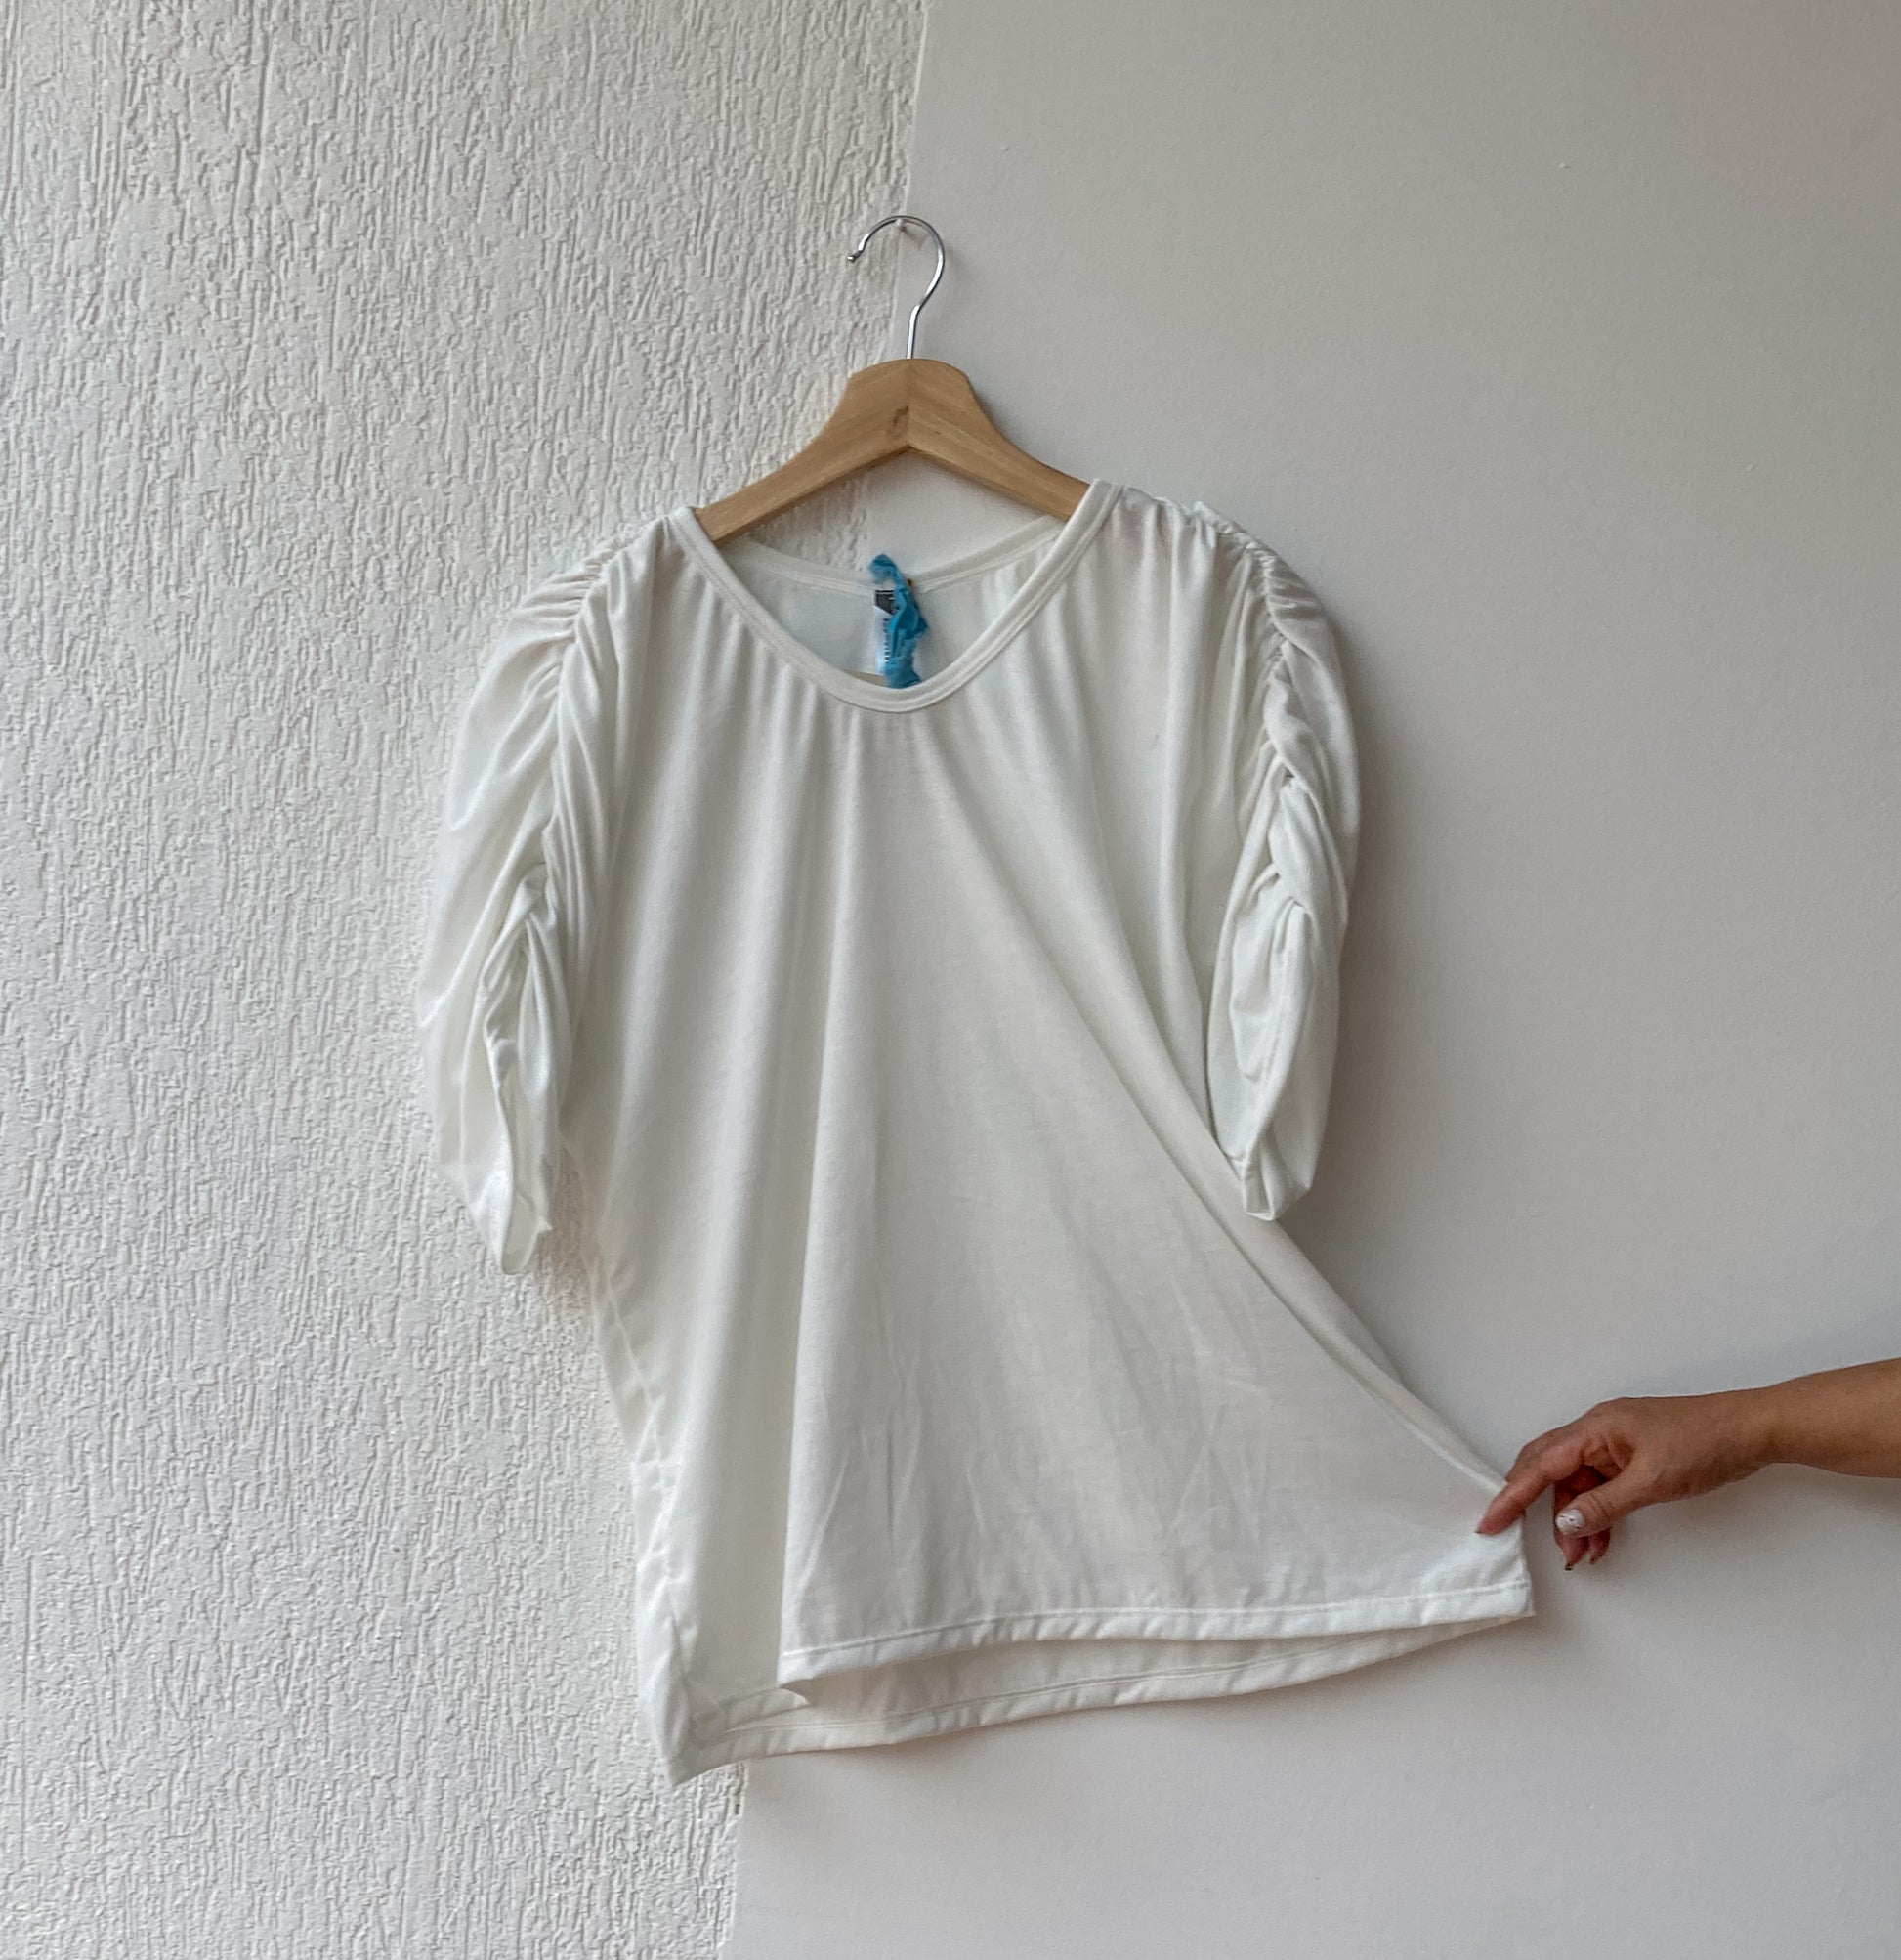 Camiseta oversize manga japonesa y fruncido en tela ecologica blanca, 100% Colombiano.